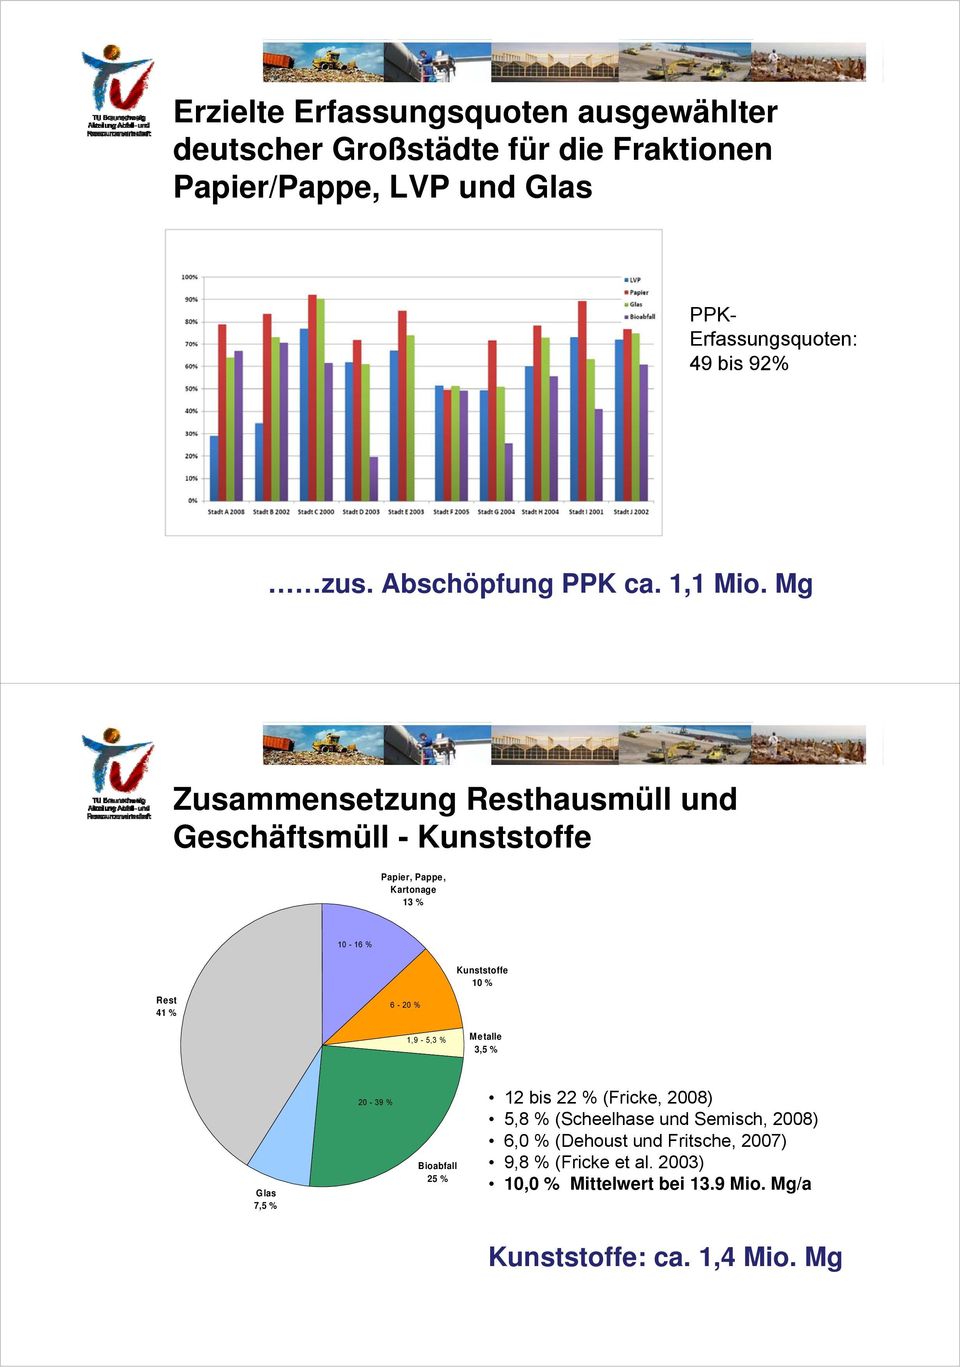 Mg Zusammensetzung Resthausmüll und Geschäftsmüll - Kunststoffe Papier, Pappe, Kartonage 13 % 10-16 % Rest 41 % 6-20 % 1,9-5,3 %